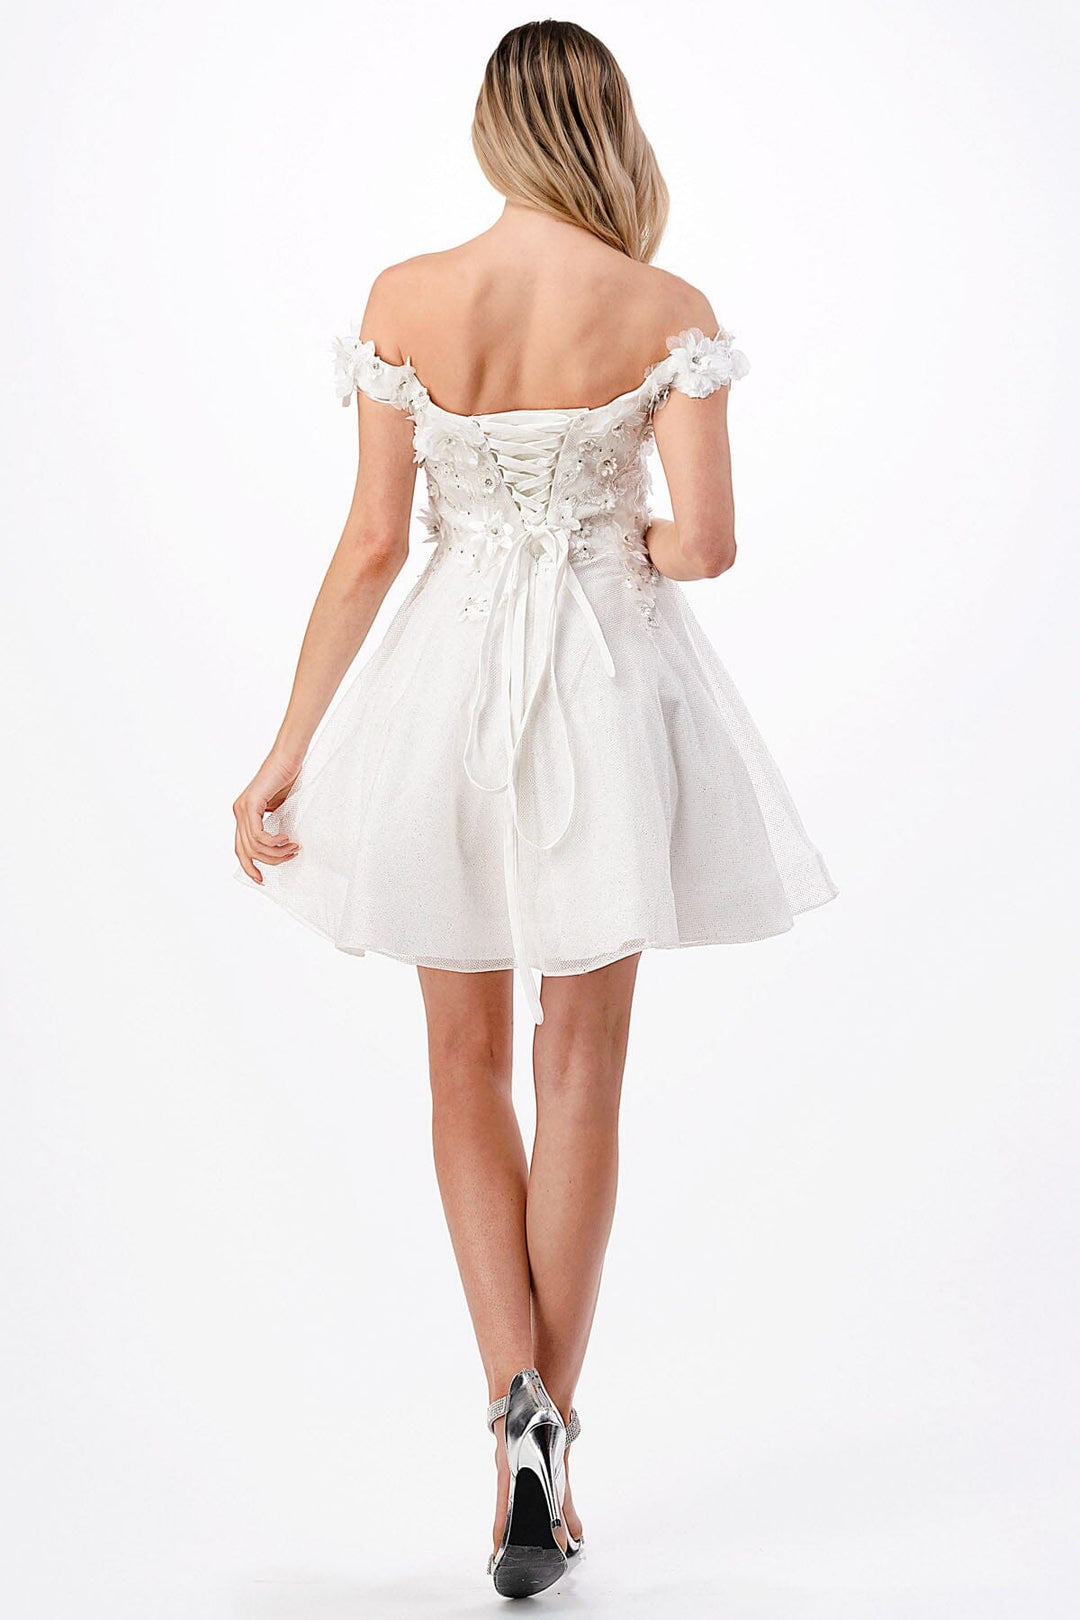 3D Floral Short Off Shoulder Dress by Coya S2721